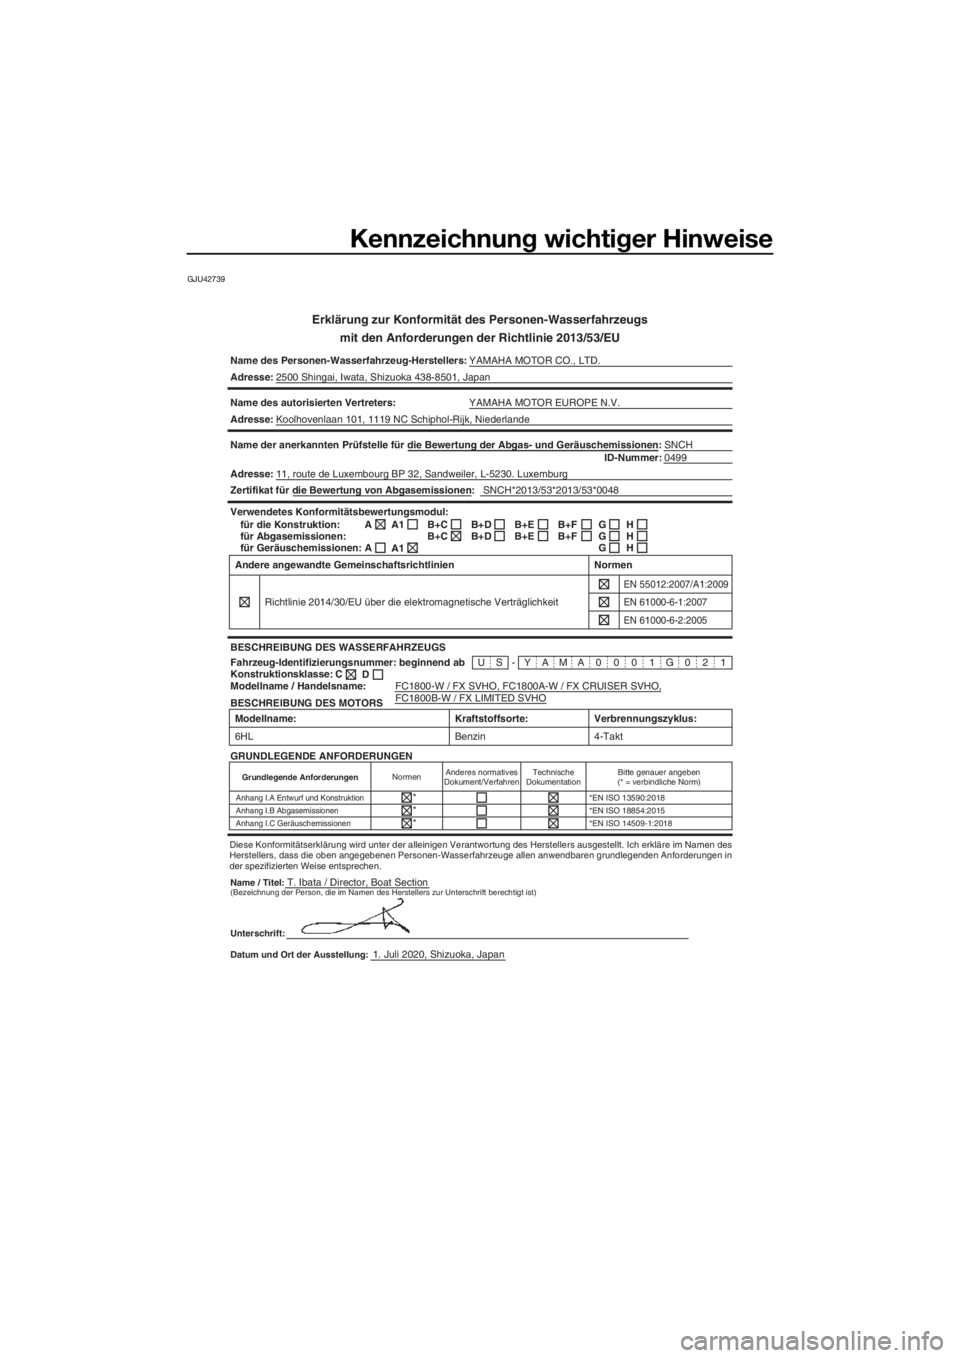 YAMAHA FX SVHO 2021  Betriebsanleitungen (in German) Kennzeichnung wichtiger Hinweise
GJU42739
Erklärung zur Konformität des Personen-Wasserfahrzeugs
mit den Anforderun gen der Richtlinie 2013/53/EU
Name des Personen-Wasserfahrzeug-Herstellers: YAMAHA